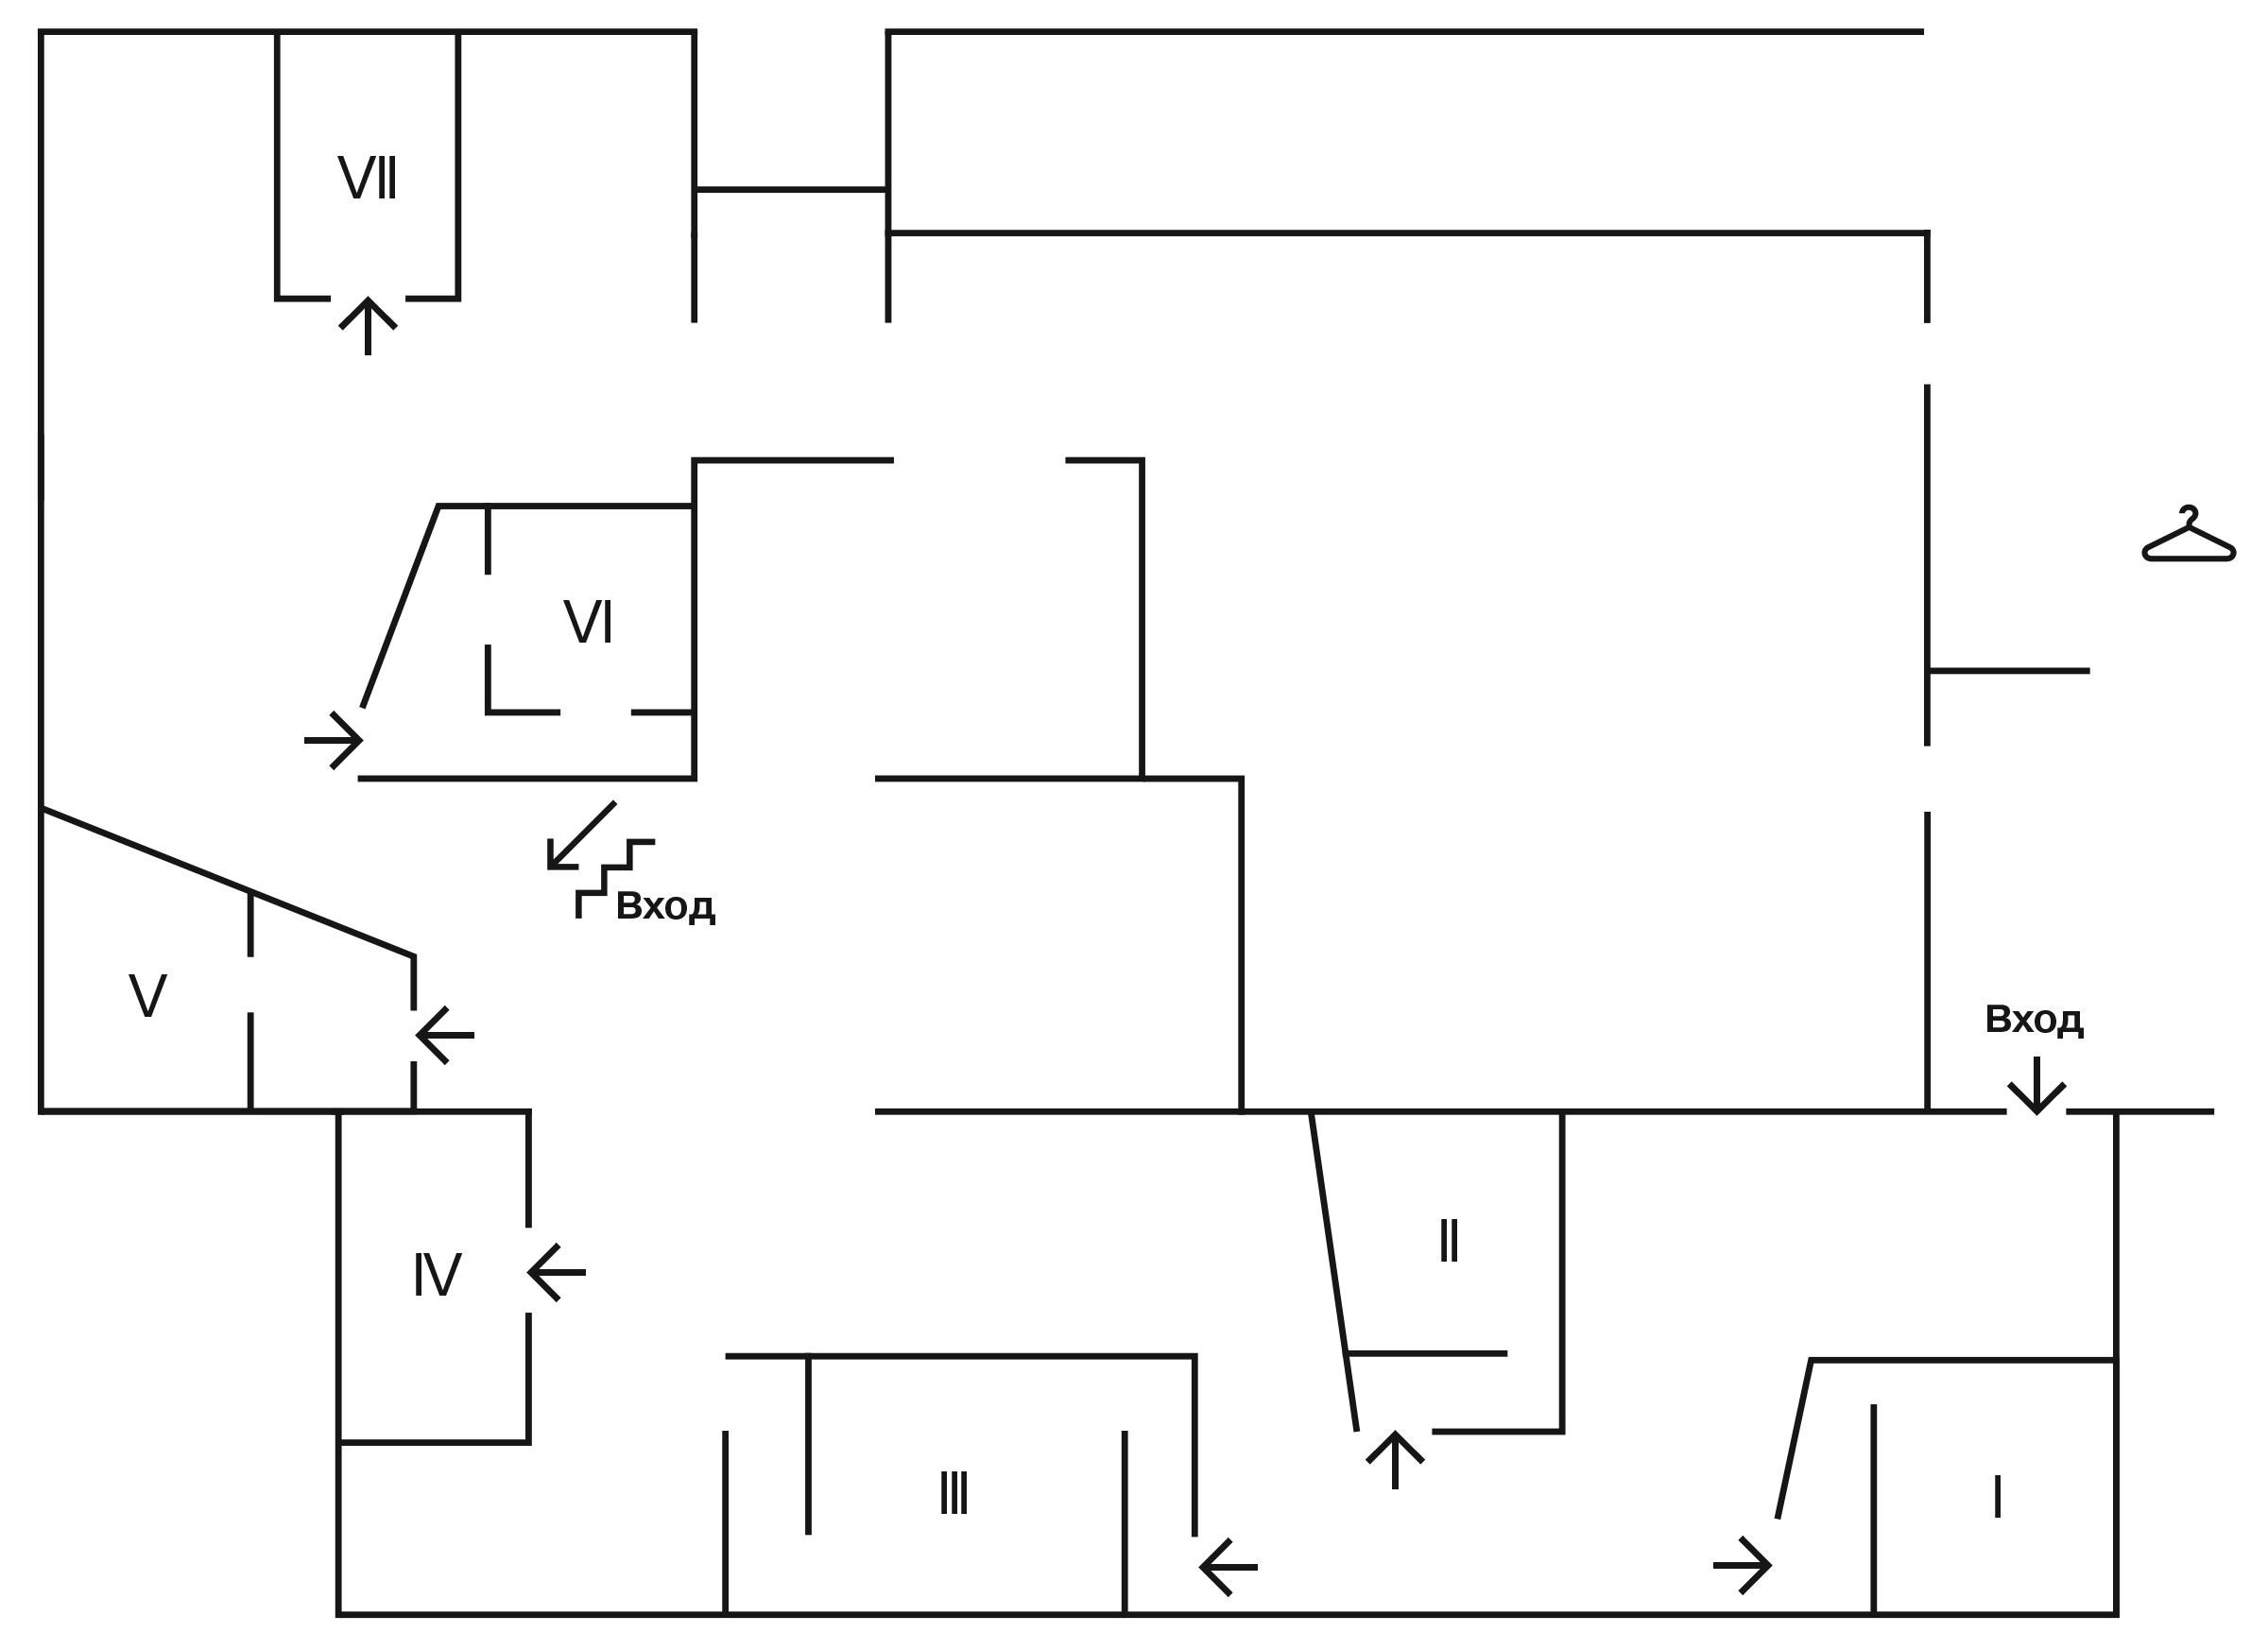 Схема: план расположения павильнов в выставочном пространстве